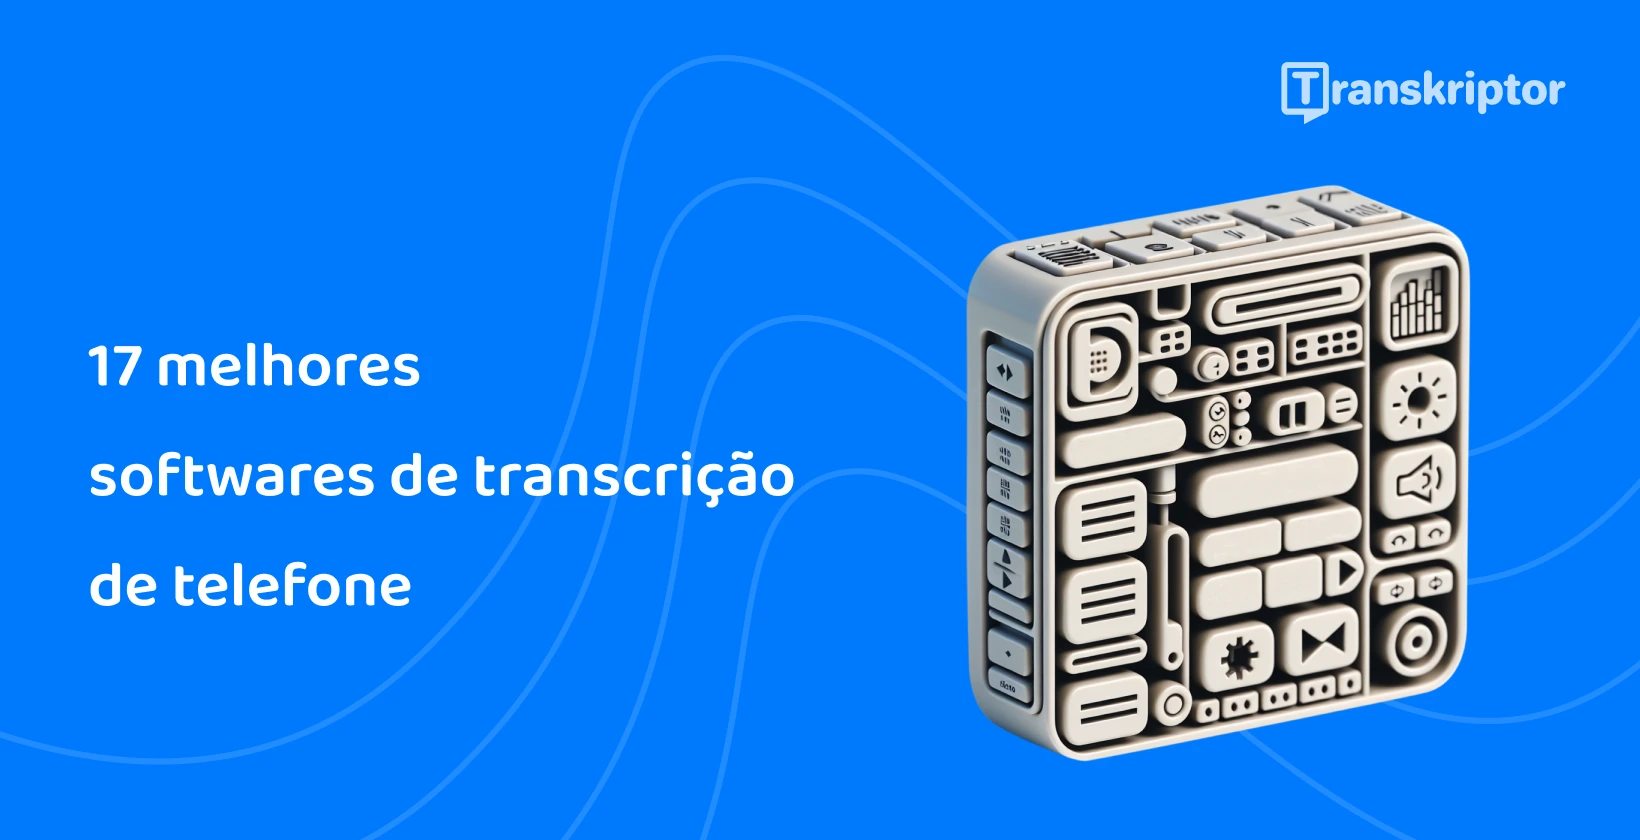 Cubo de ícones do software de transcrição de chamadas que ilustram os recursos eficientes do Transkriptor.